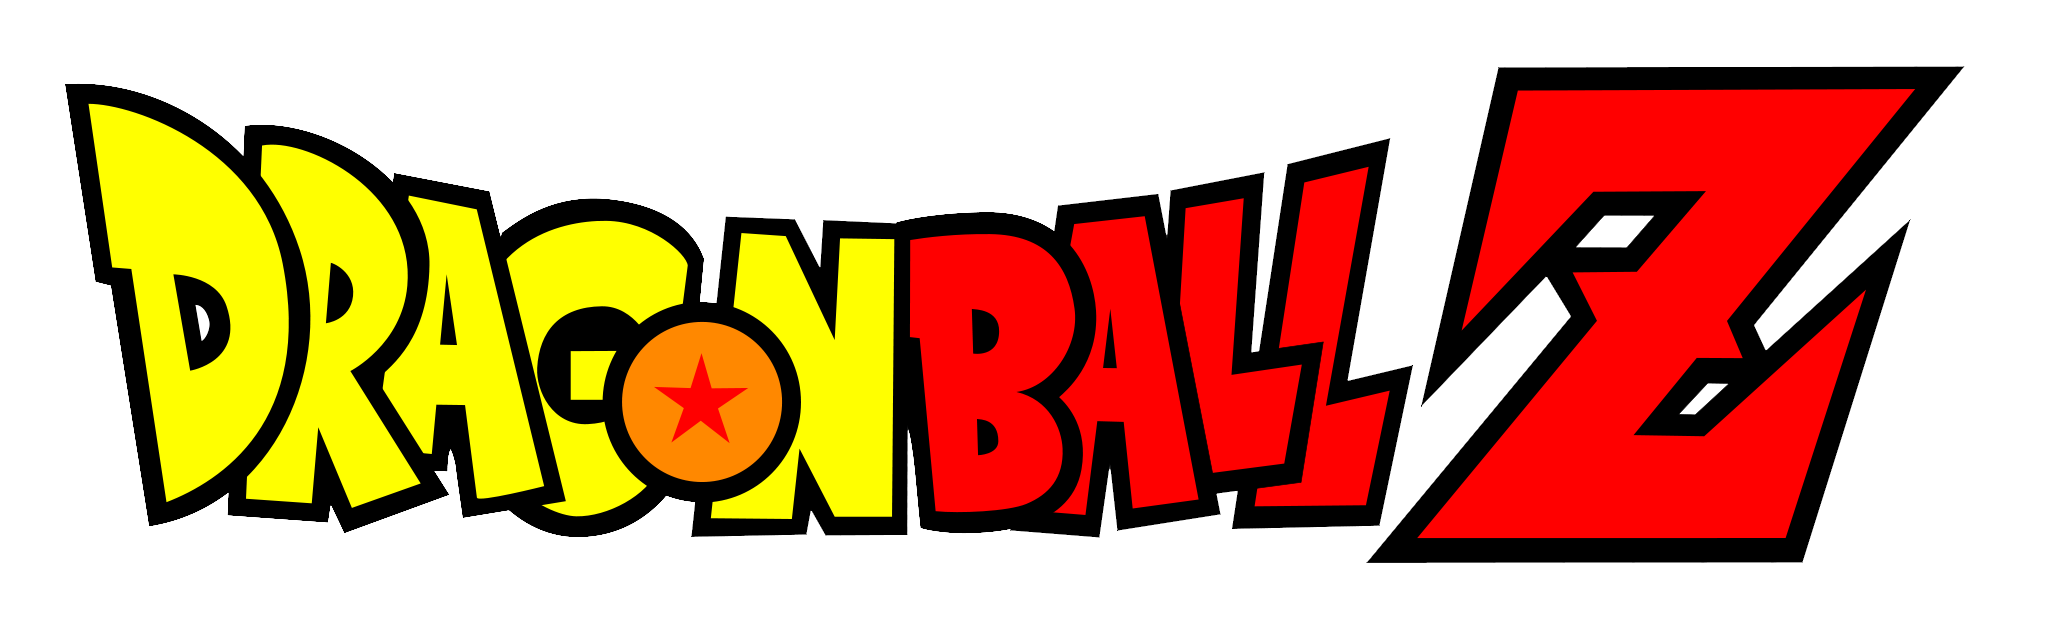 Image - Dragon Ball Z logo.png - Dragon Ball Wiki